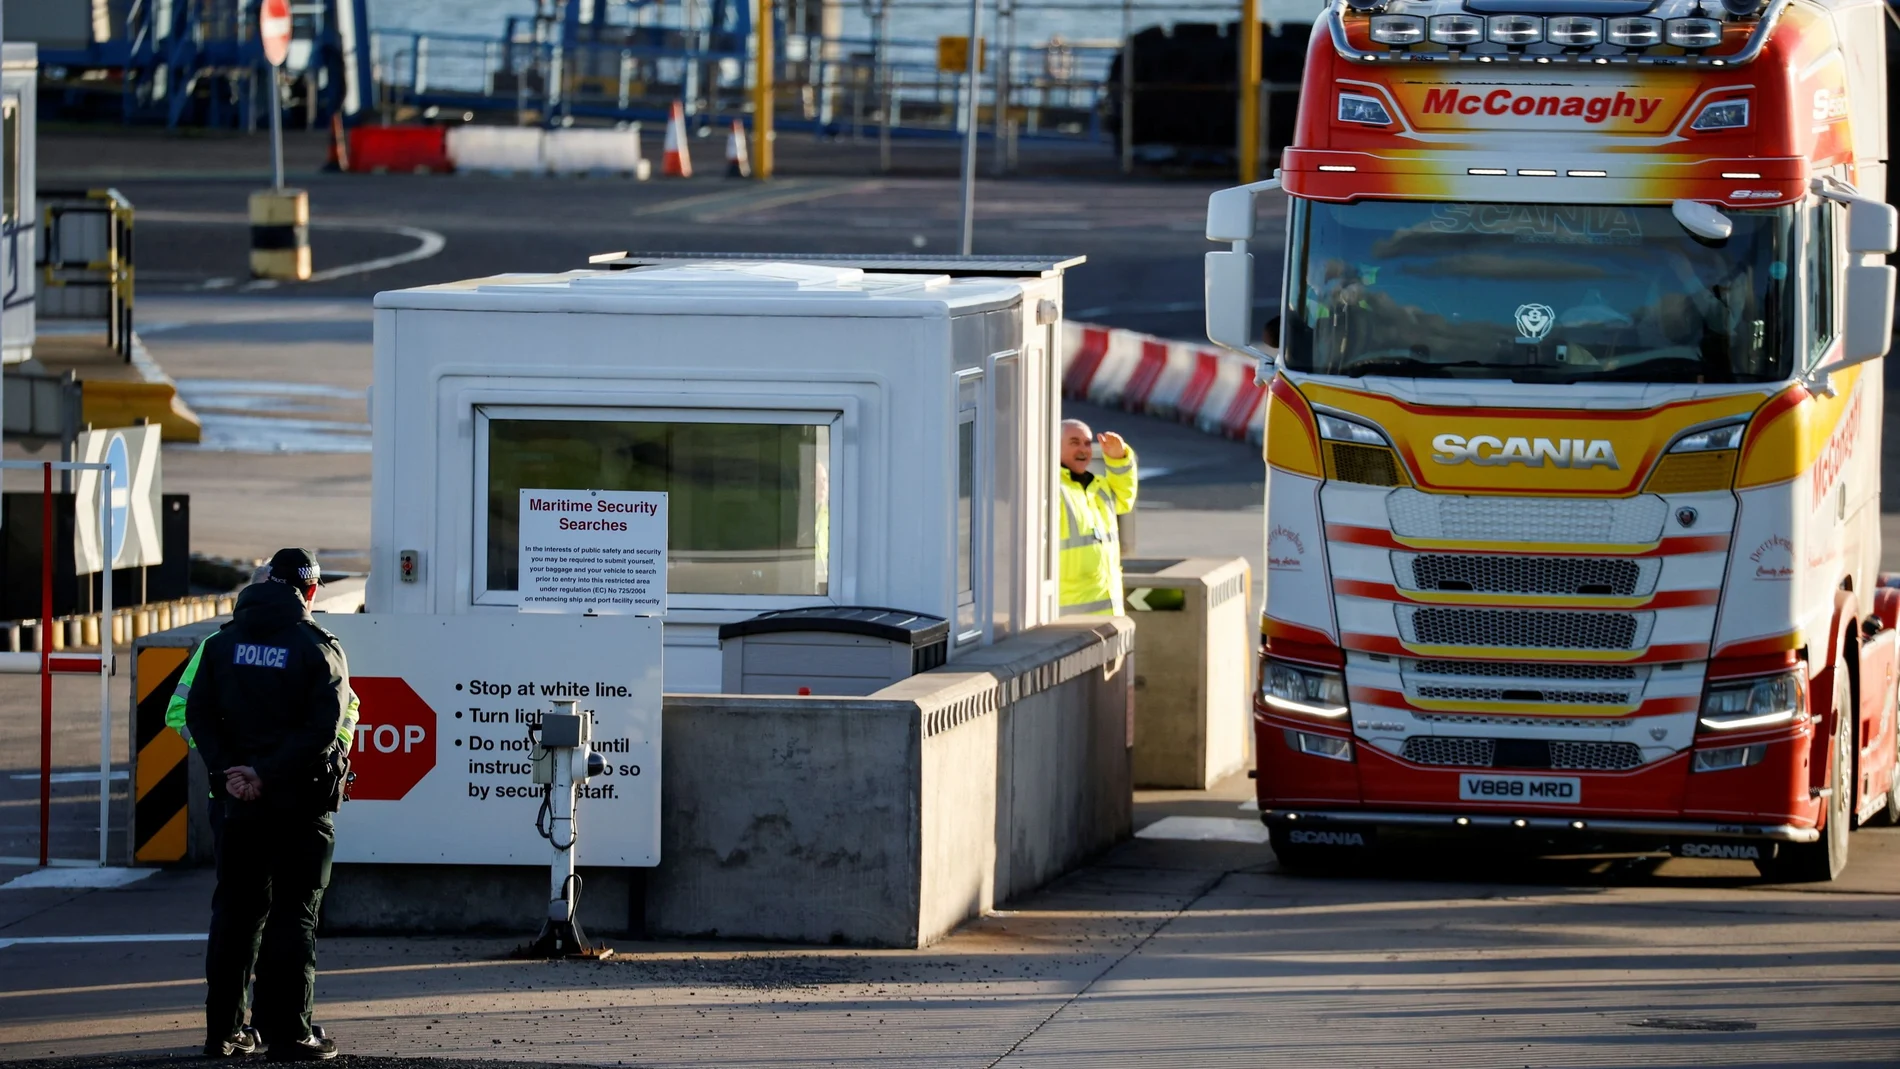 Agentes de policía junto a la seguridad del puerto mientras un camión entra en la entrada del Puerto de Larne, Irlanda del Norte